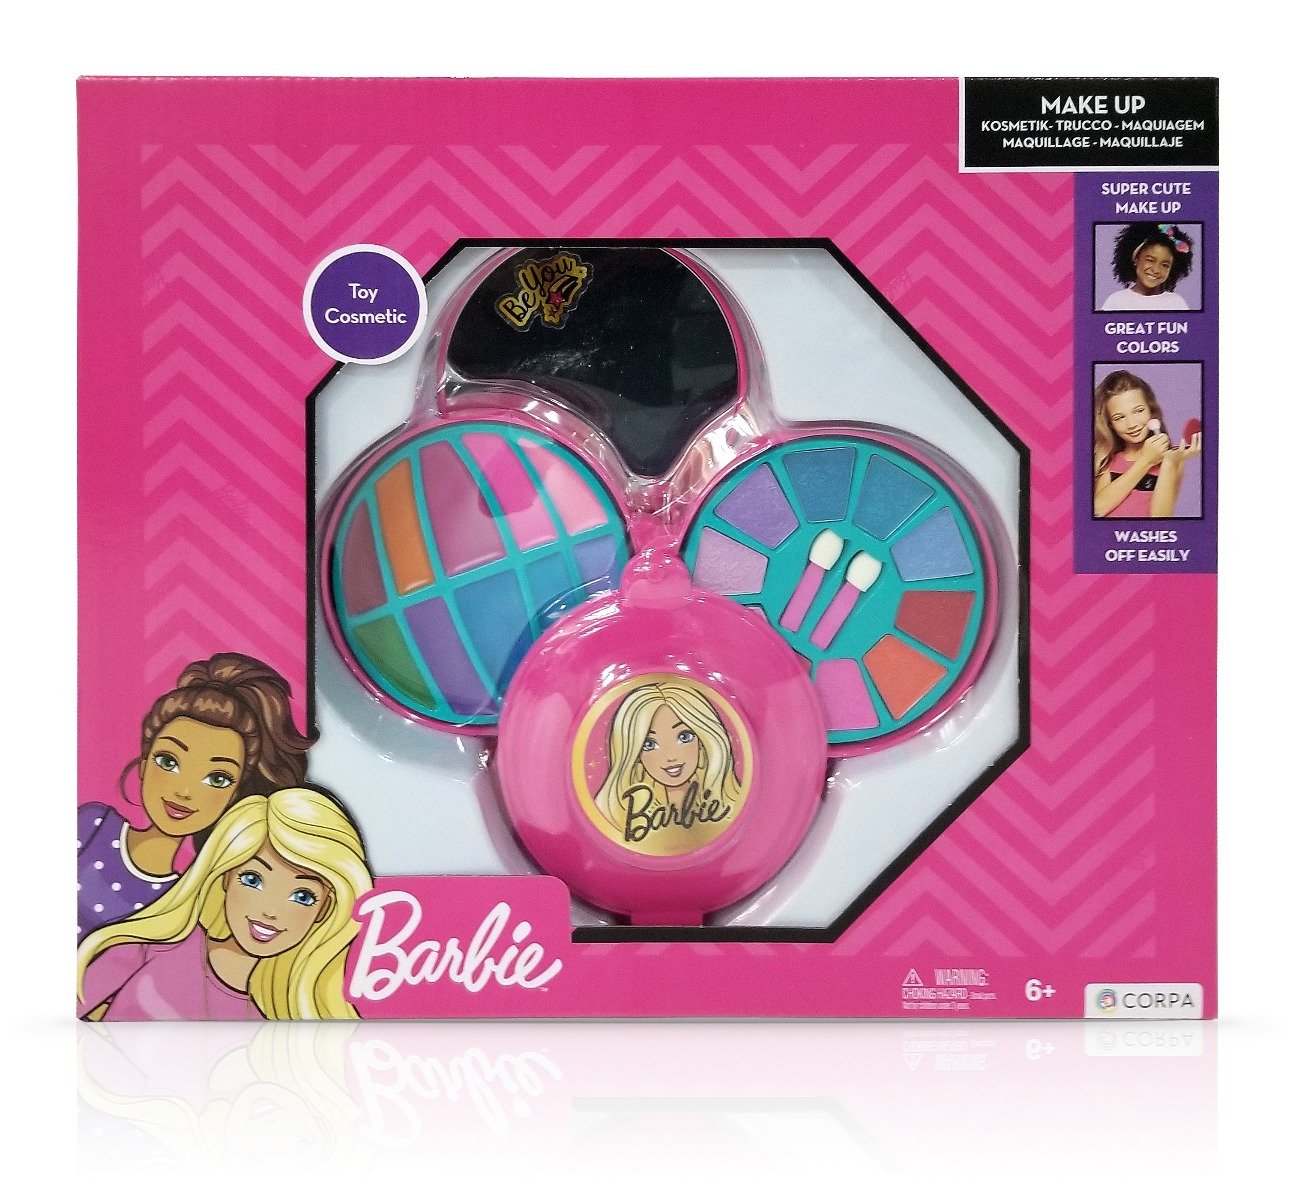 Set de cosmetice in caseta rotunda, cu 3 niveluri, Barbie